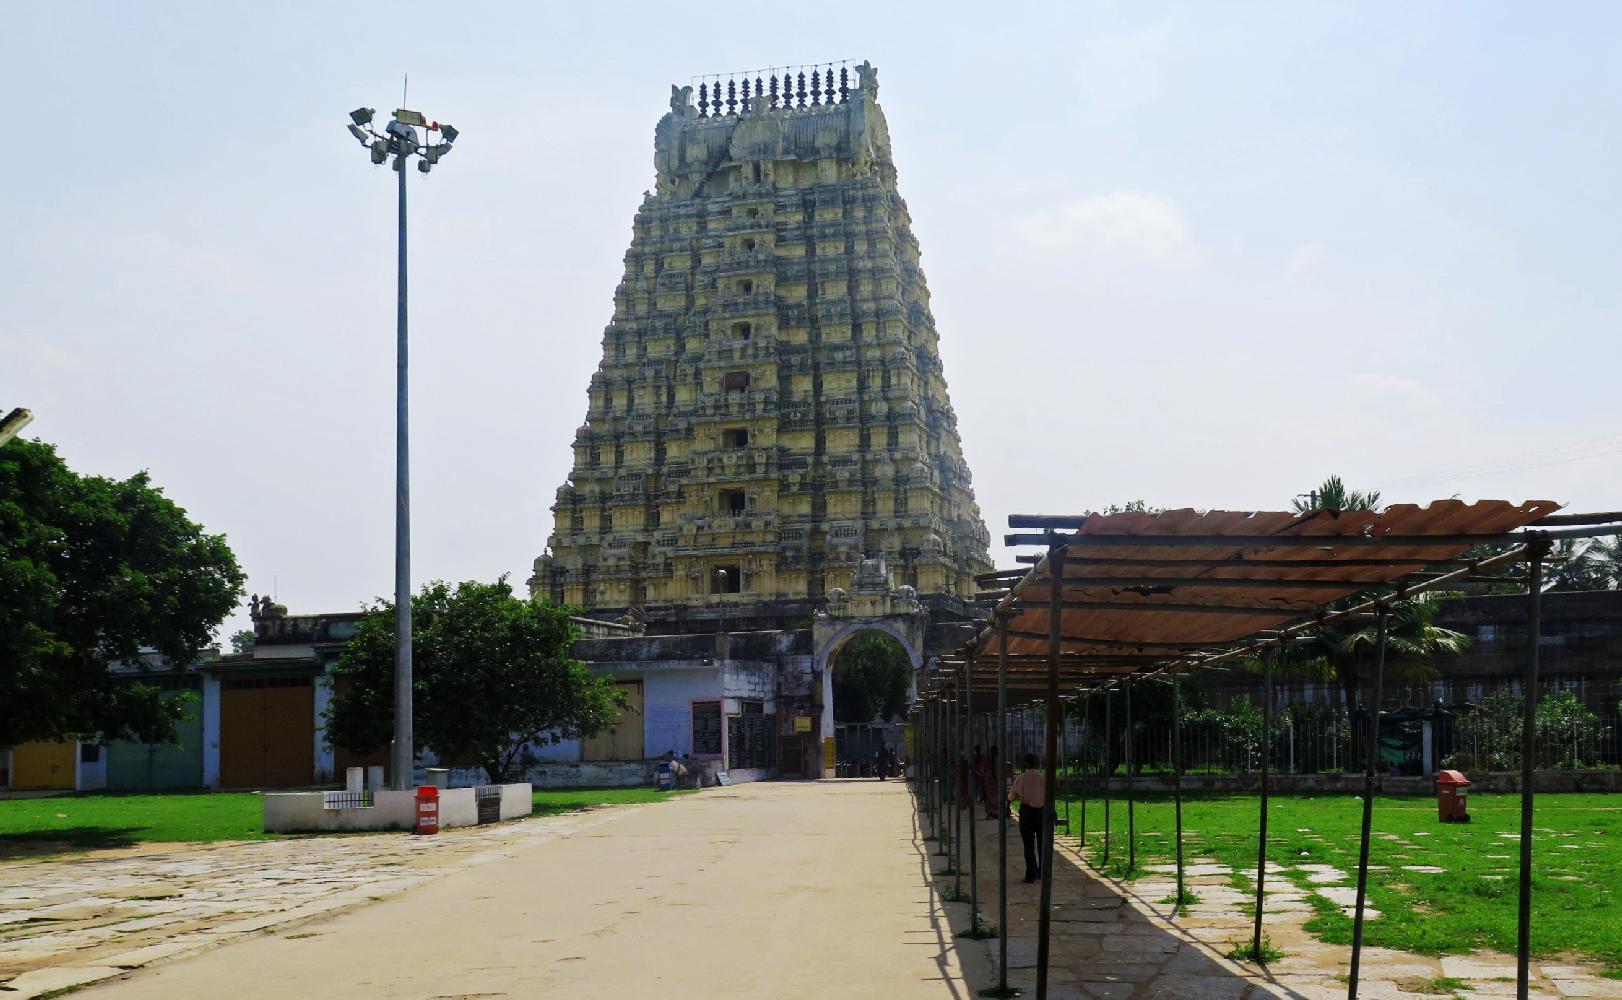 Cover image of this place Ekambareswar Temple / Kanchipuram 